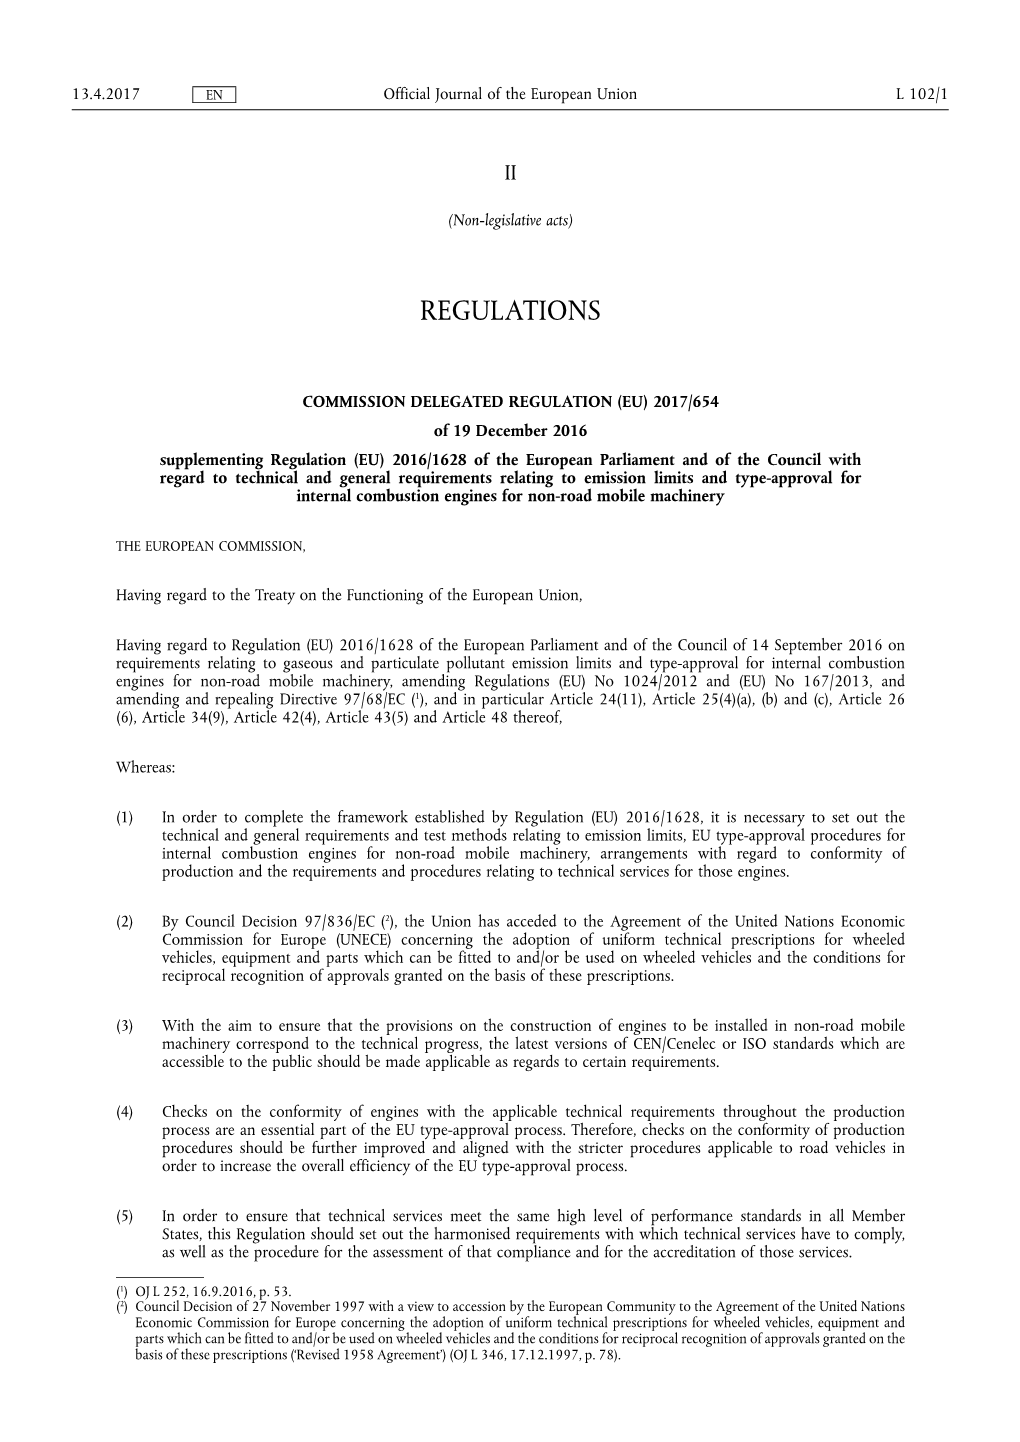 Supplementing Regulation (EU) 2016/ 1628